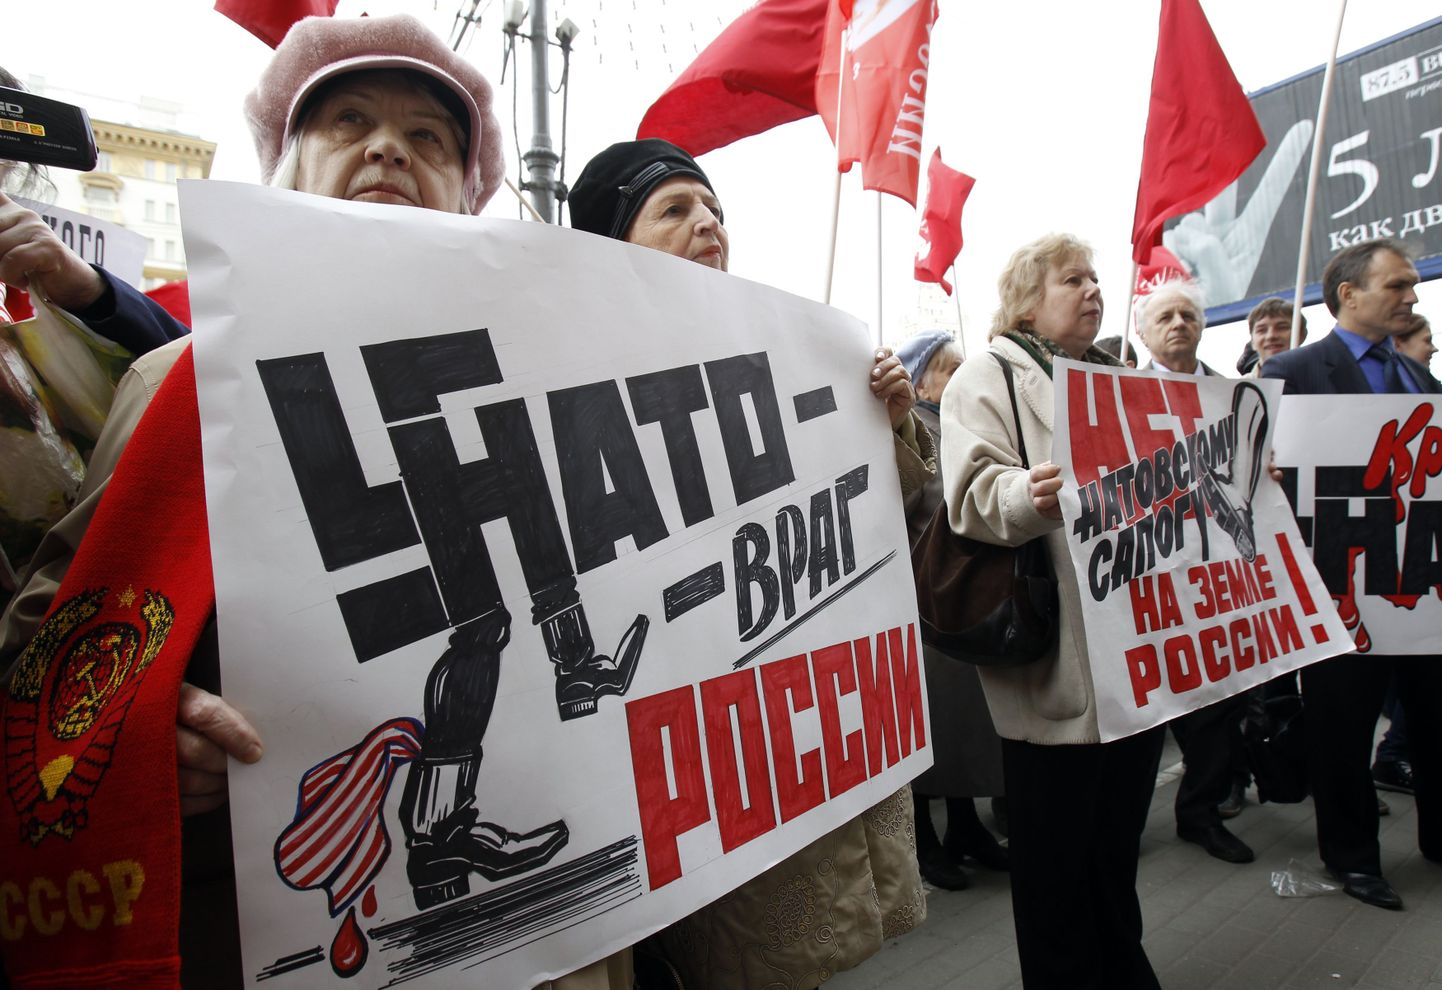 Kommunistliku Partei liikmed avaldamas meelt NATO vastu. Allianssi kujutatakse vasakpoolsel plakatil Venemaa vaenlasena ja natside ühendusena.